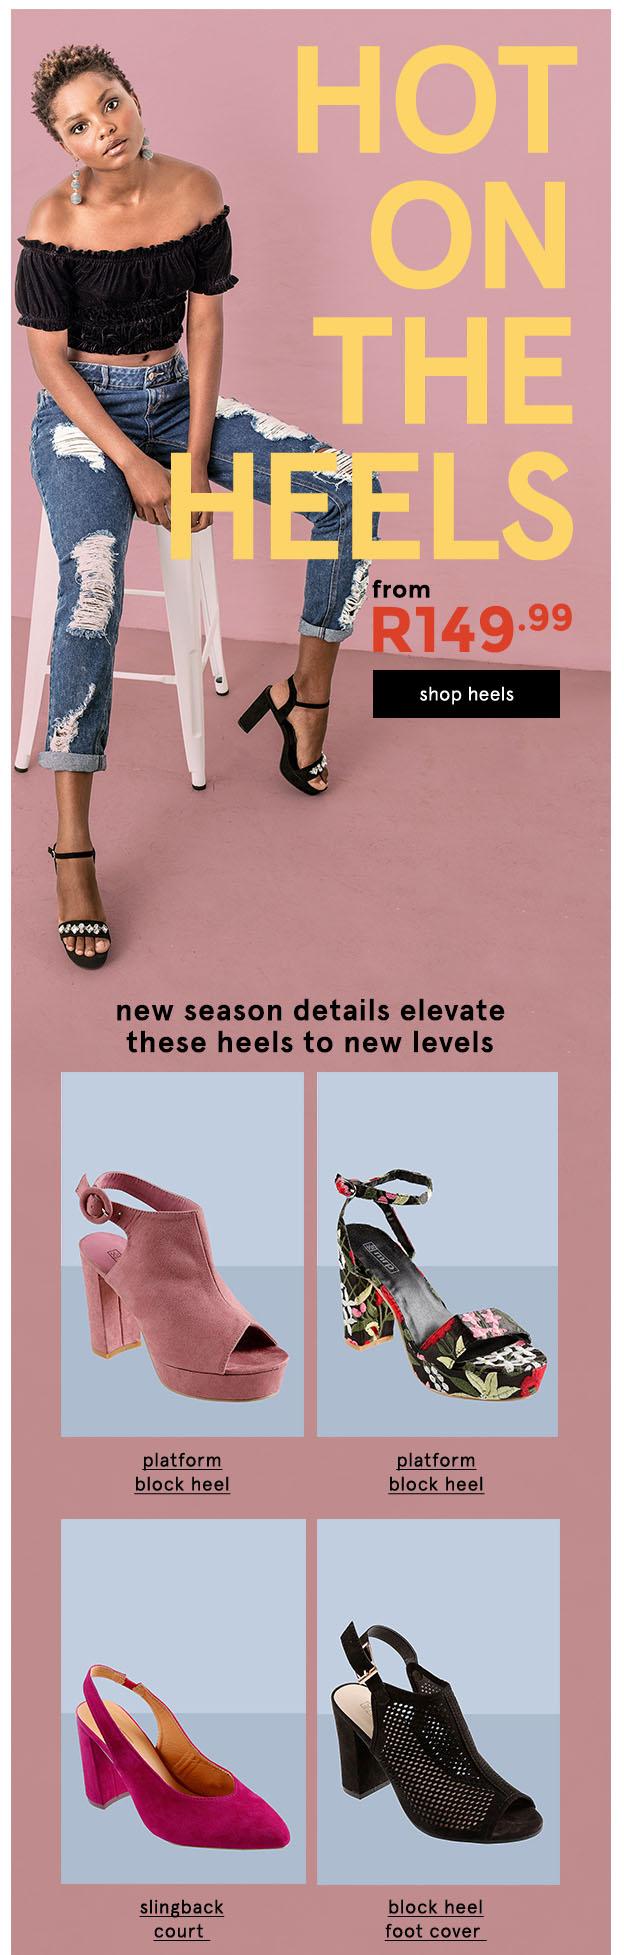 Buy > black block heels at mr price > in stock